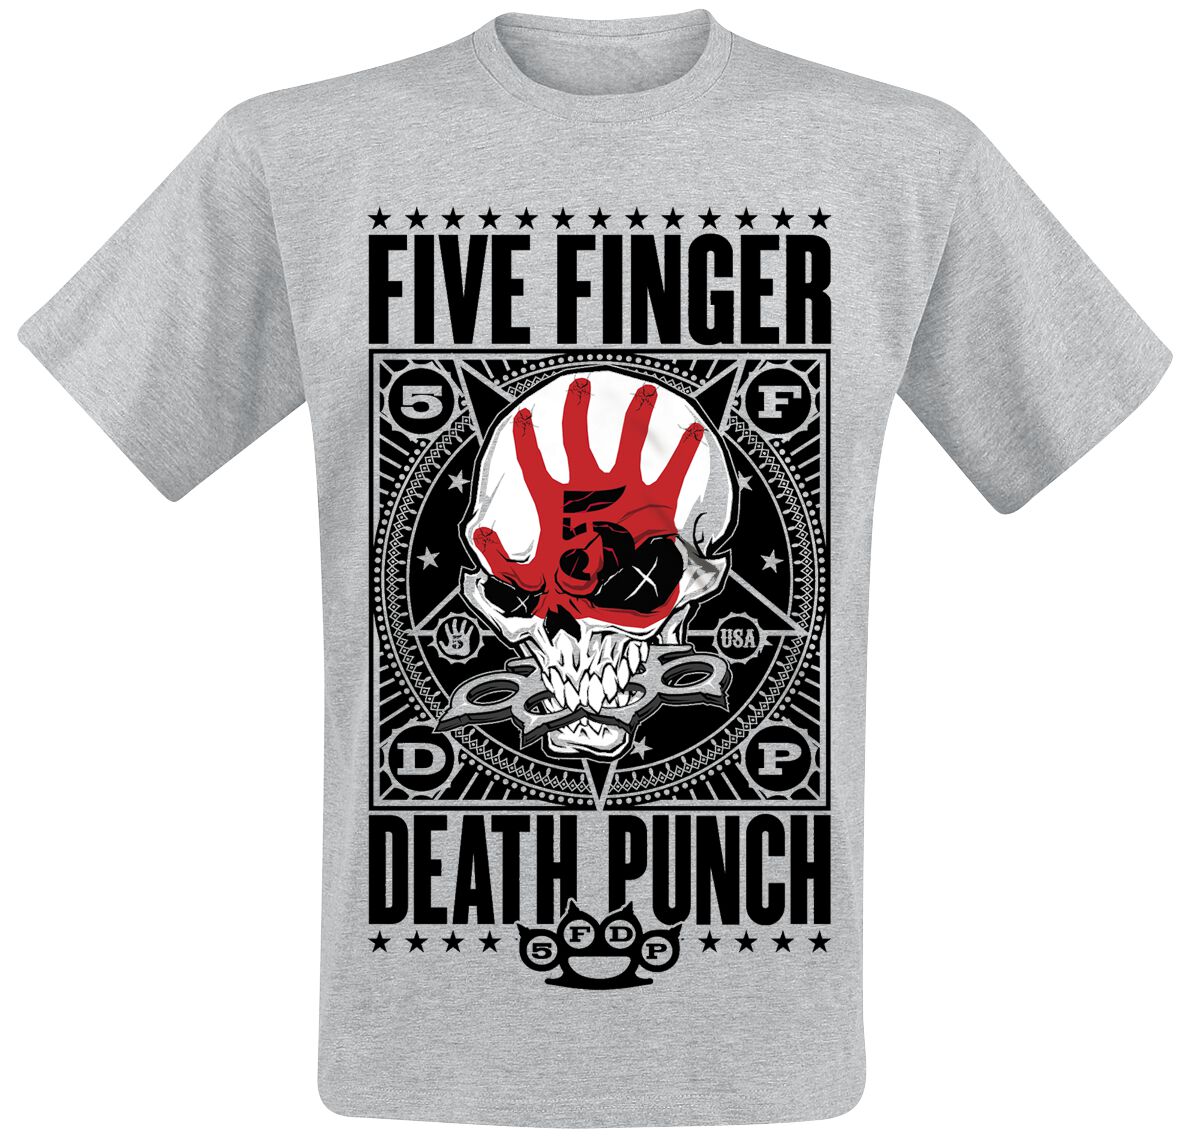 Five Finger Death Punch T-Shirt - Punchagram - M bis XXL - für Männer - Größe XXL - grau meliert  - EMP exklusives Merchandise! von Five Finger Death Punch